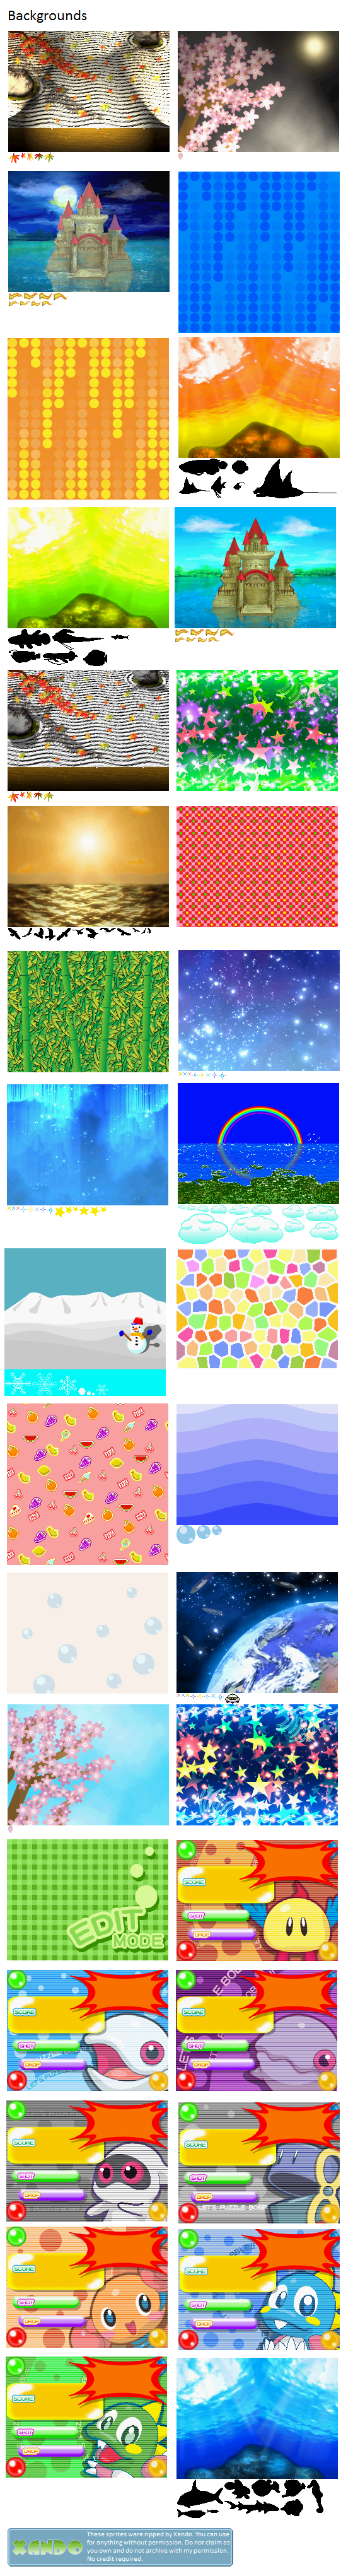 Puzzle Bobble DS - Backgrounds